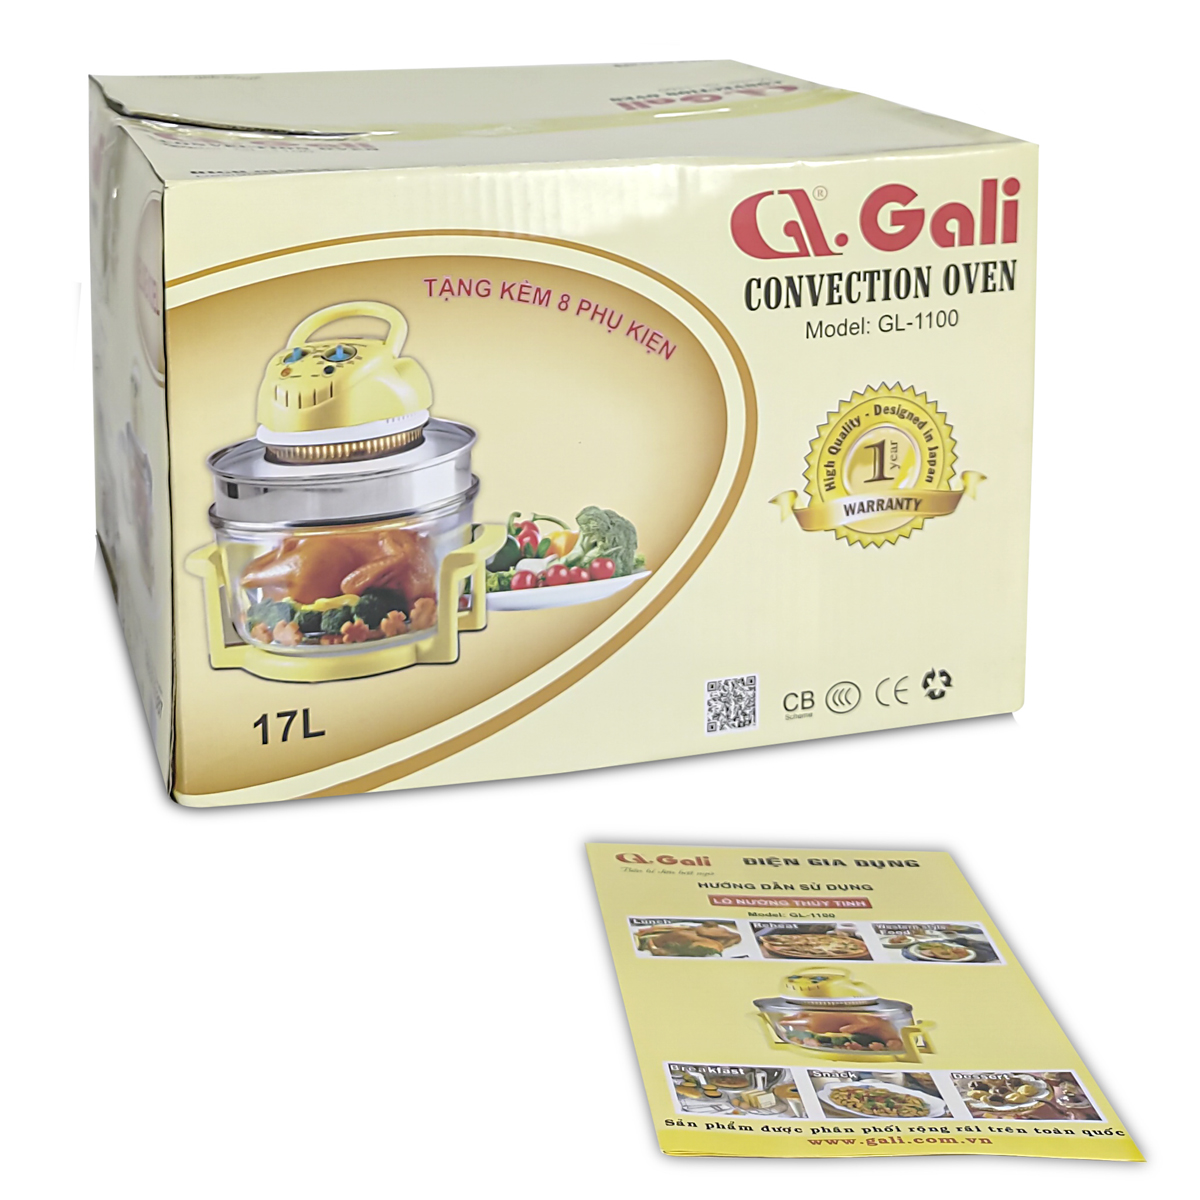 Lò nướng thủy tinh đa năng Gali GL-1110 17 lít 1300w, hàng chính hãng bảo hành 24 tháng, tặng kèm 10 phụ kiện tiện lợi.